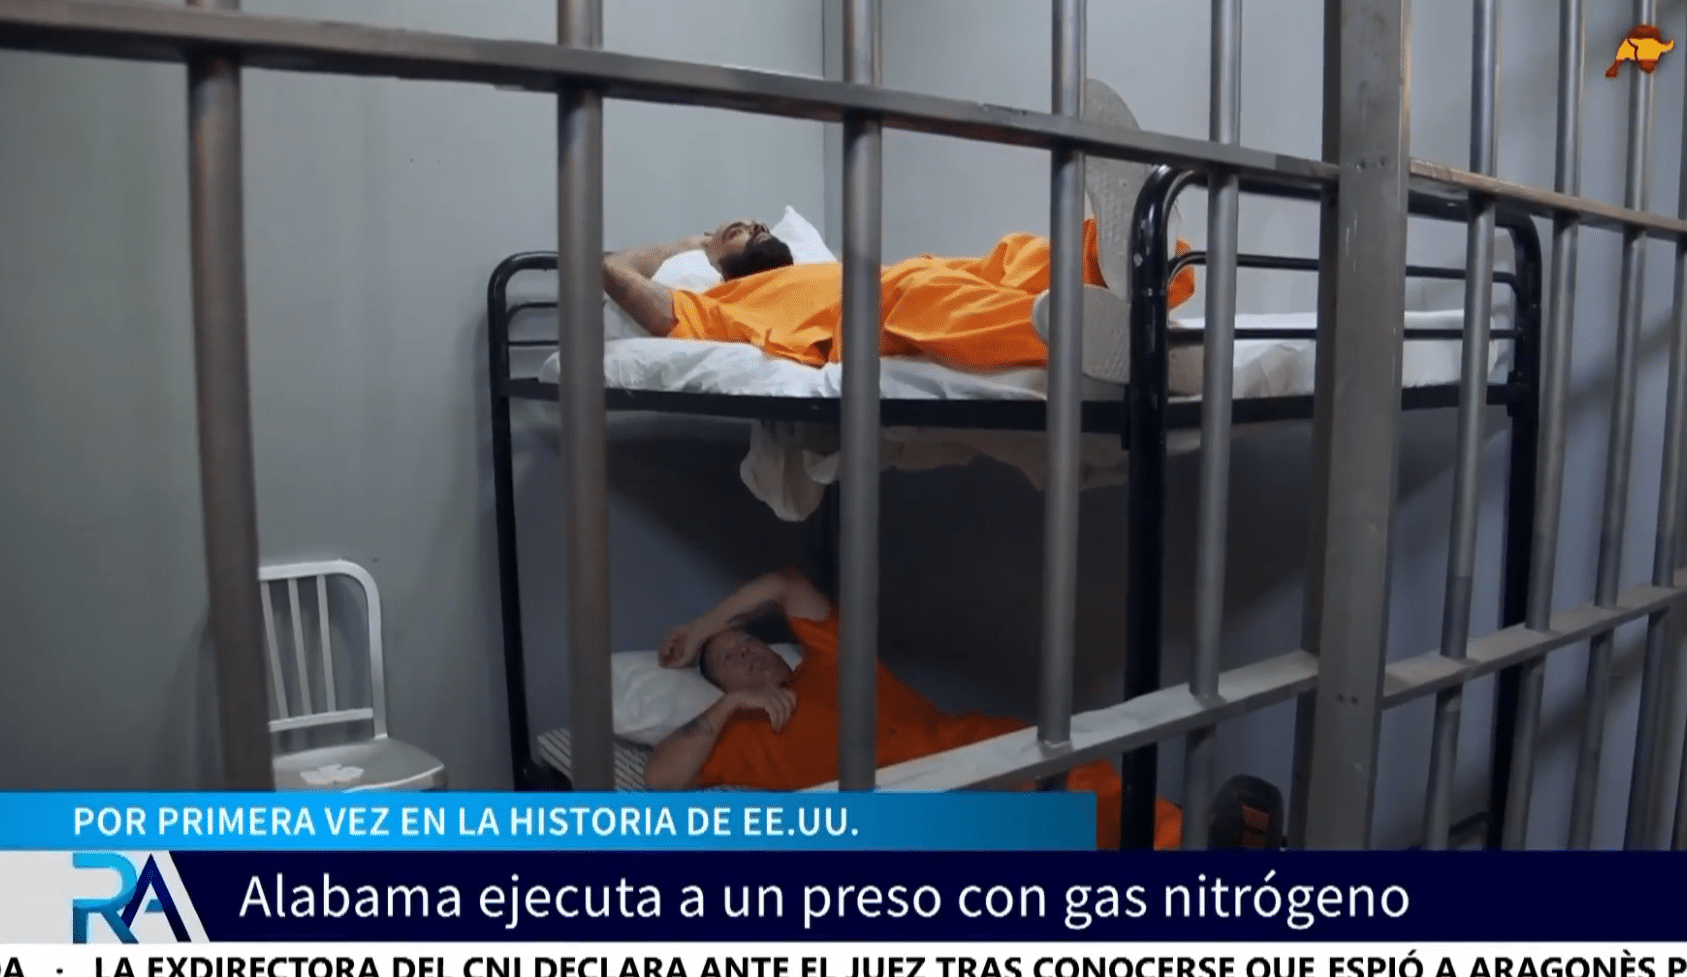 Polémica en EE. UU. por utilizar gas nitrógeno para ejecutar a un preso en Alabama